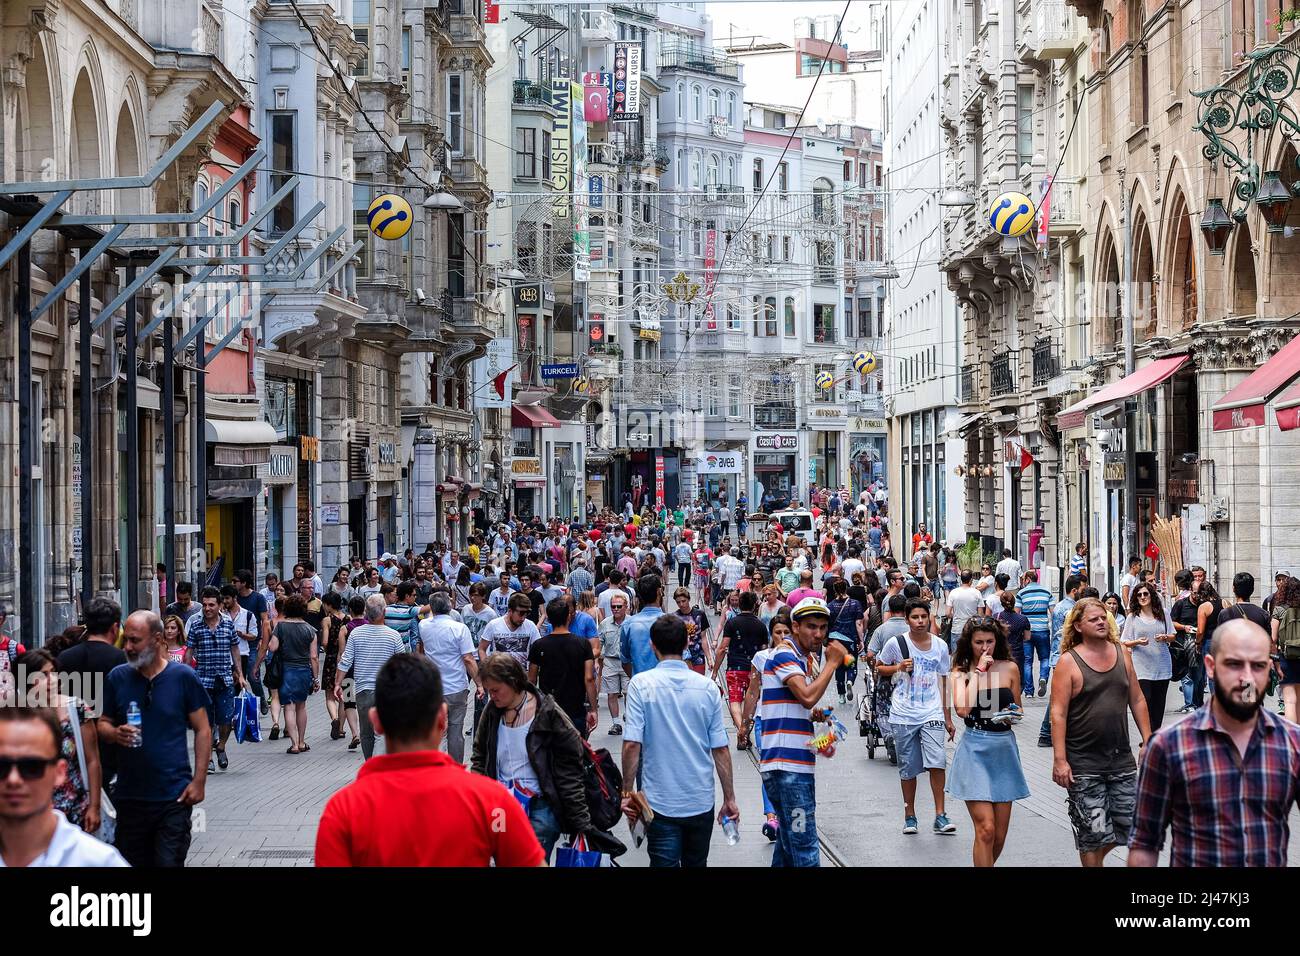 Istanbul-Turquie, 07 12 2014: Sur la rue Istiklal, l'une des rues les plus fréquentées d'Istanbul, les gens bondés se rassemblent pour faire du shopping et visiter. Banque D'Images